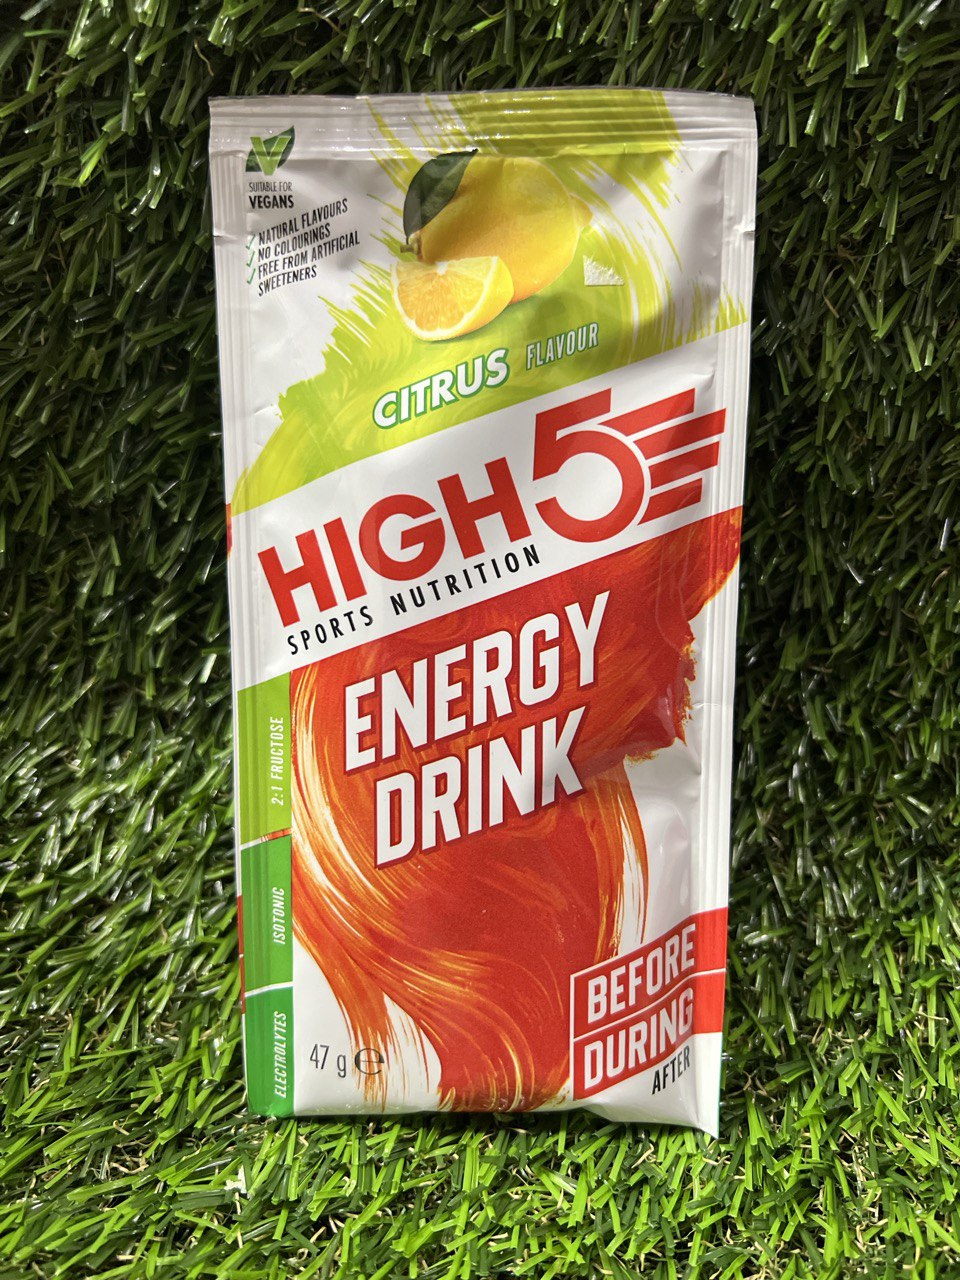 HIGH5 Energy Drink